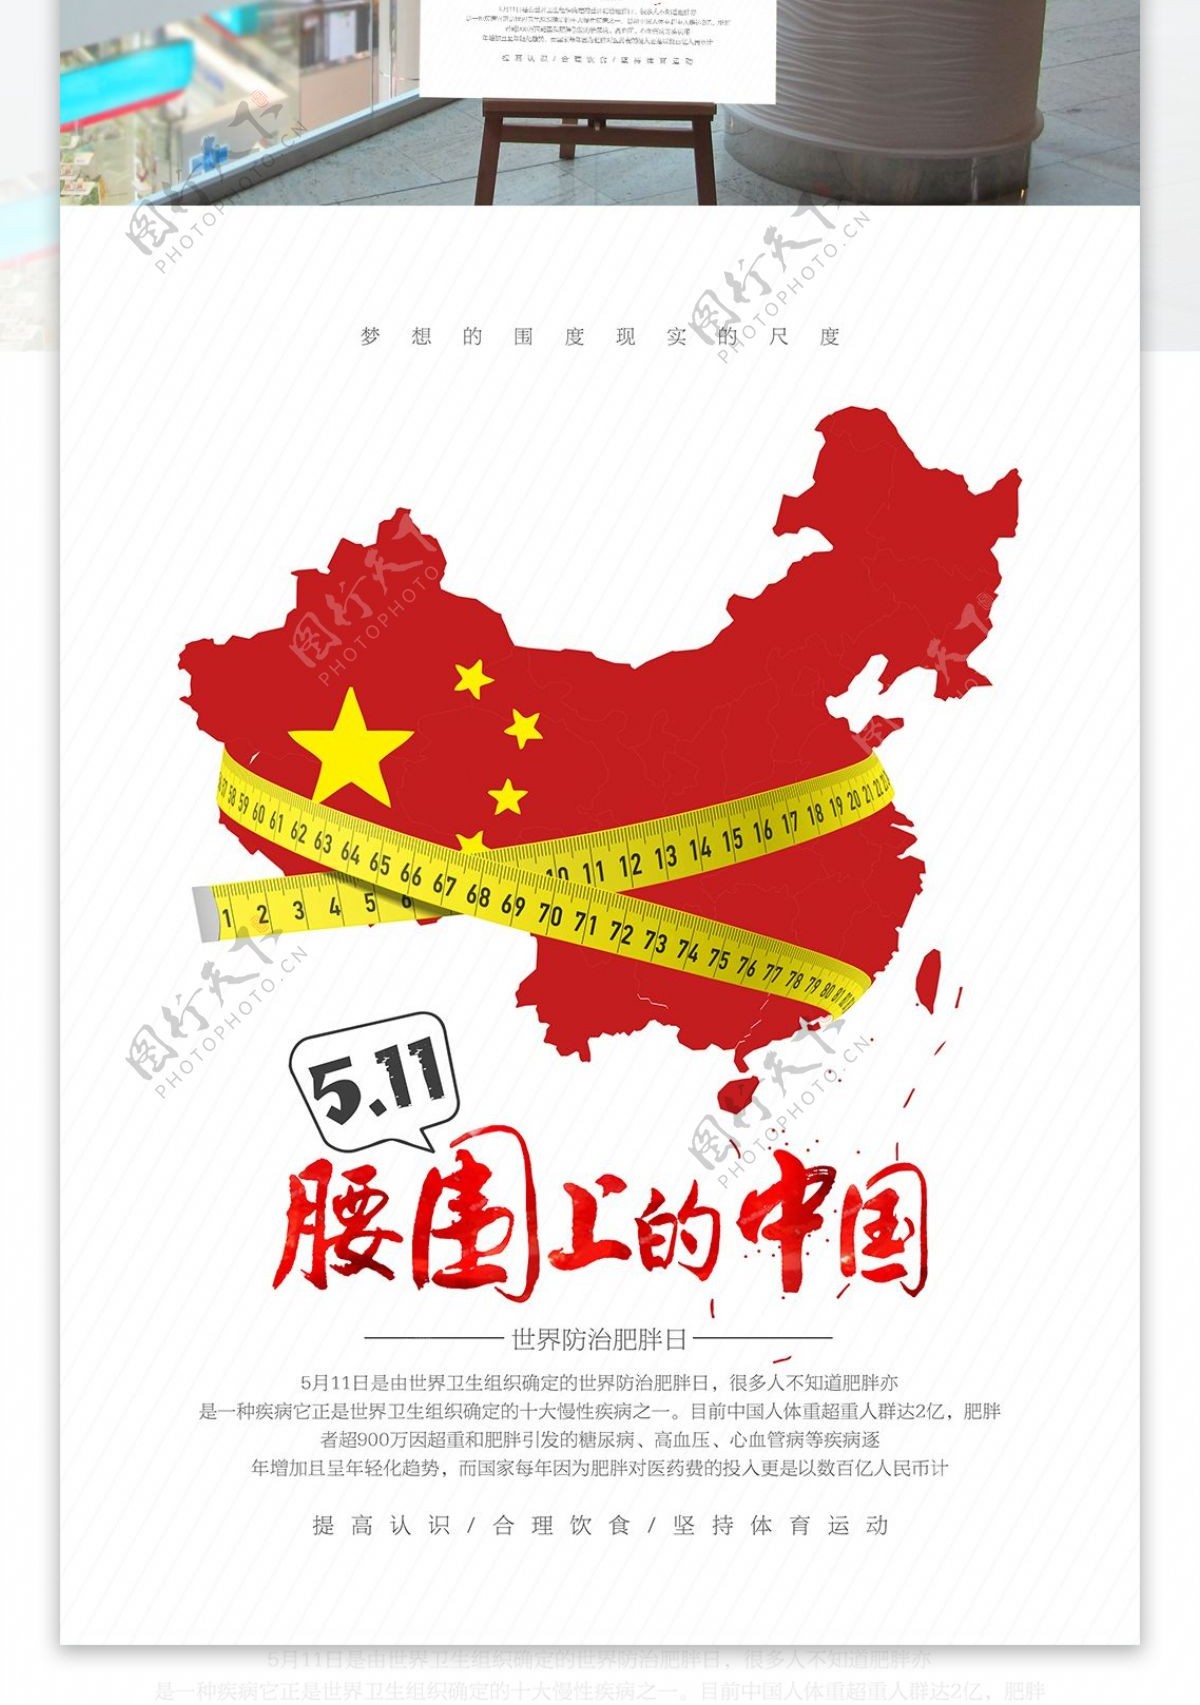 创意腰围上的中国世界防治肥胖日宣传海报